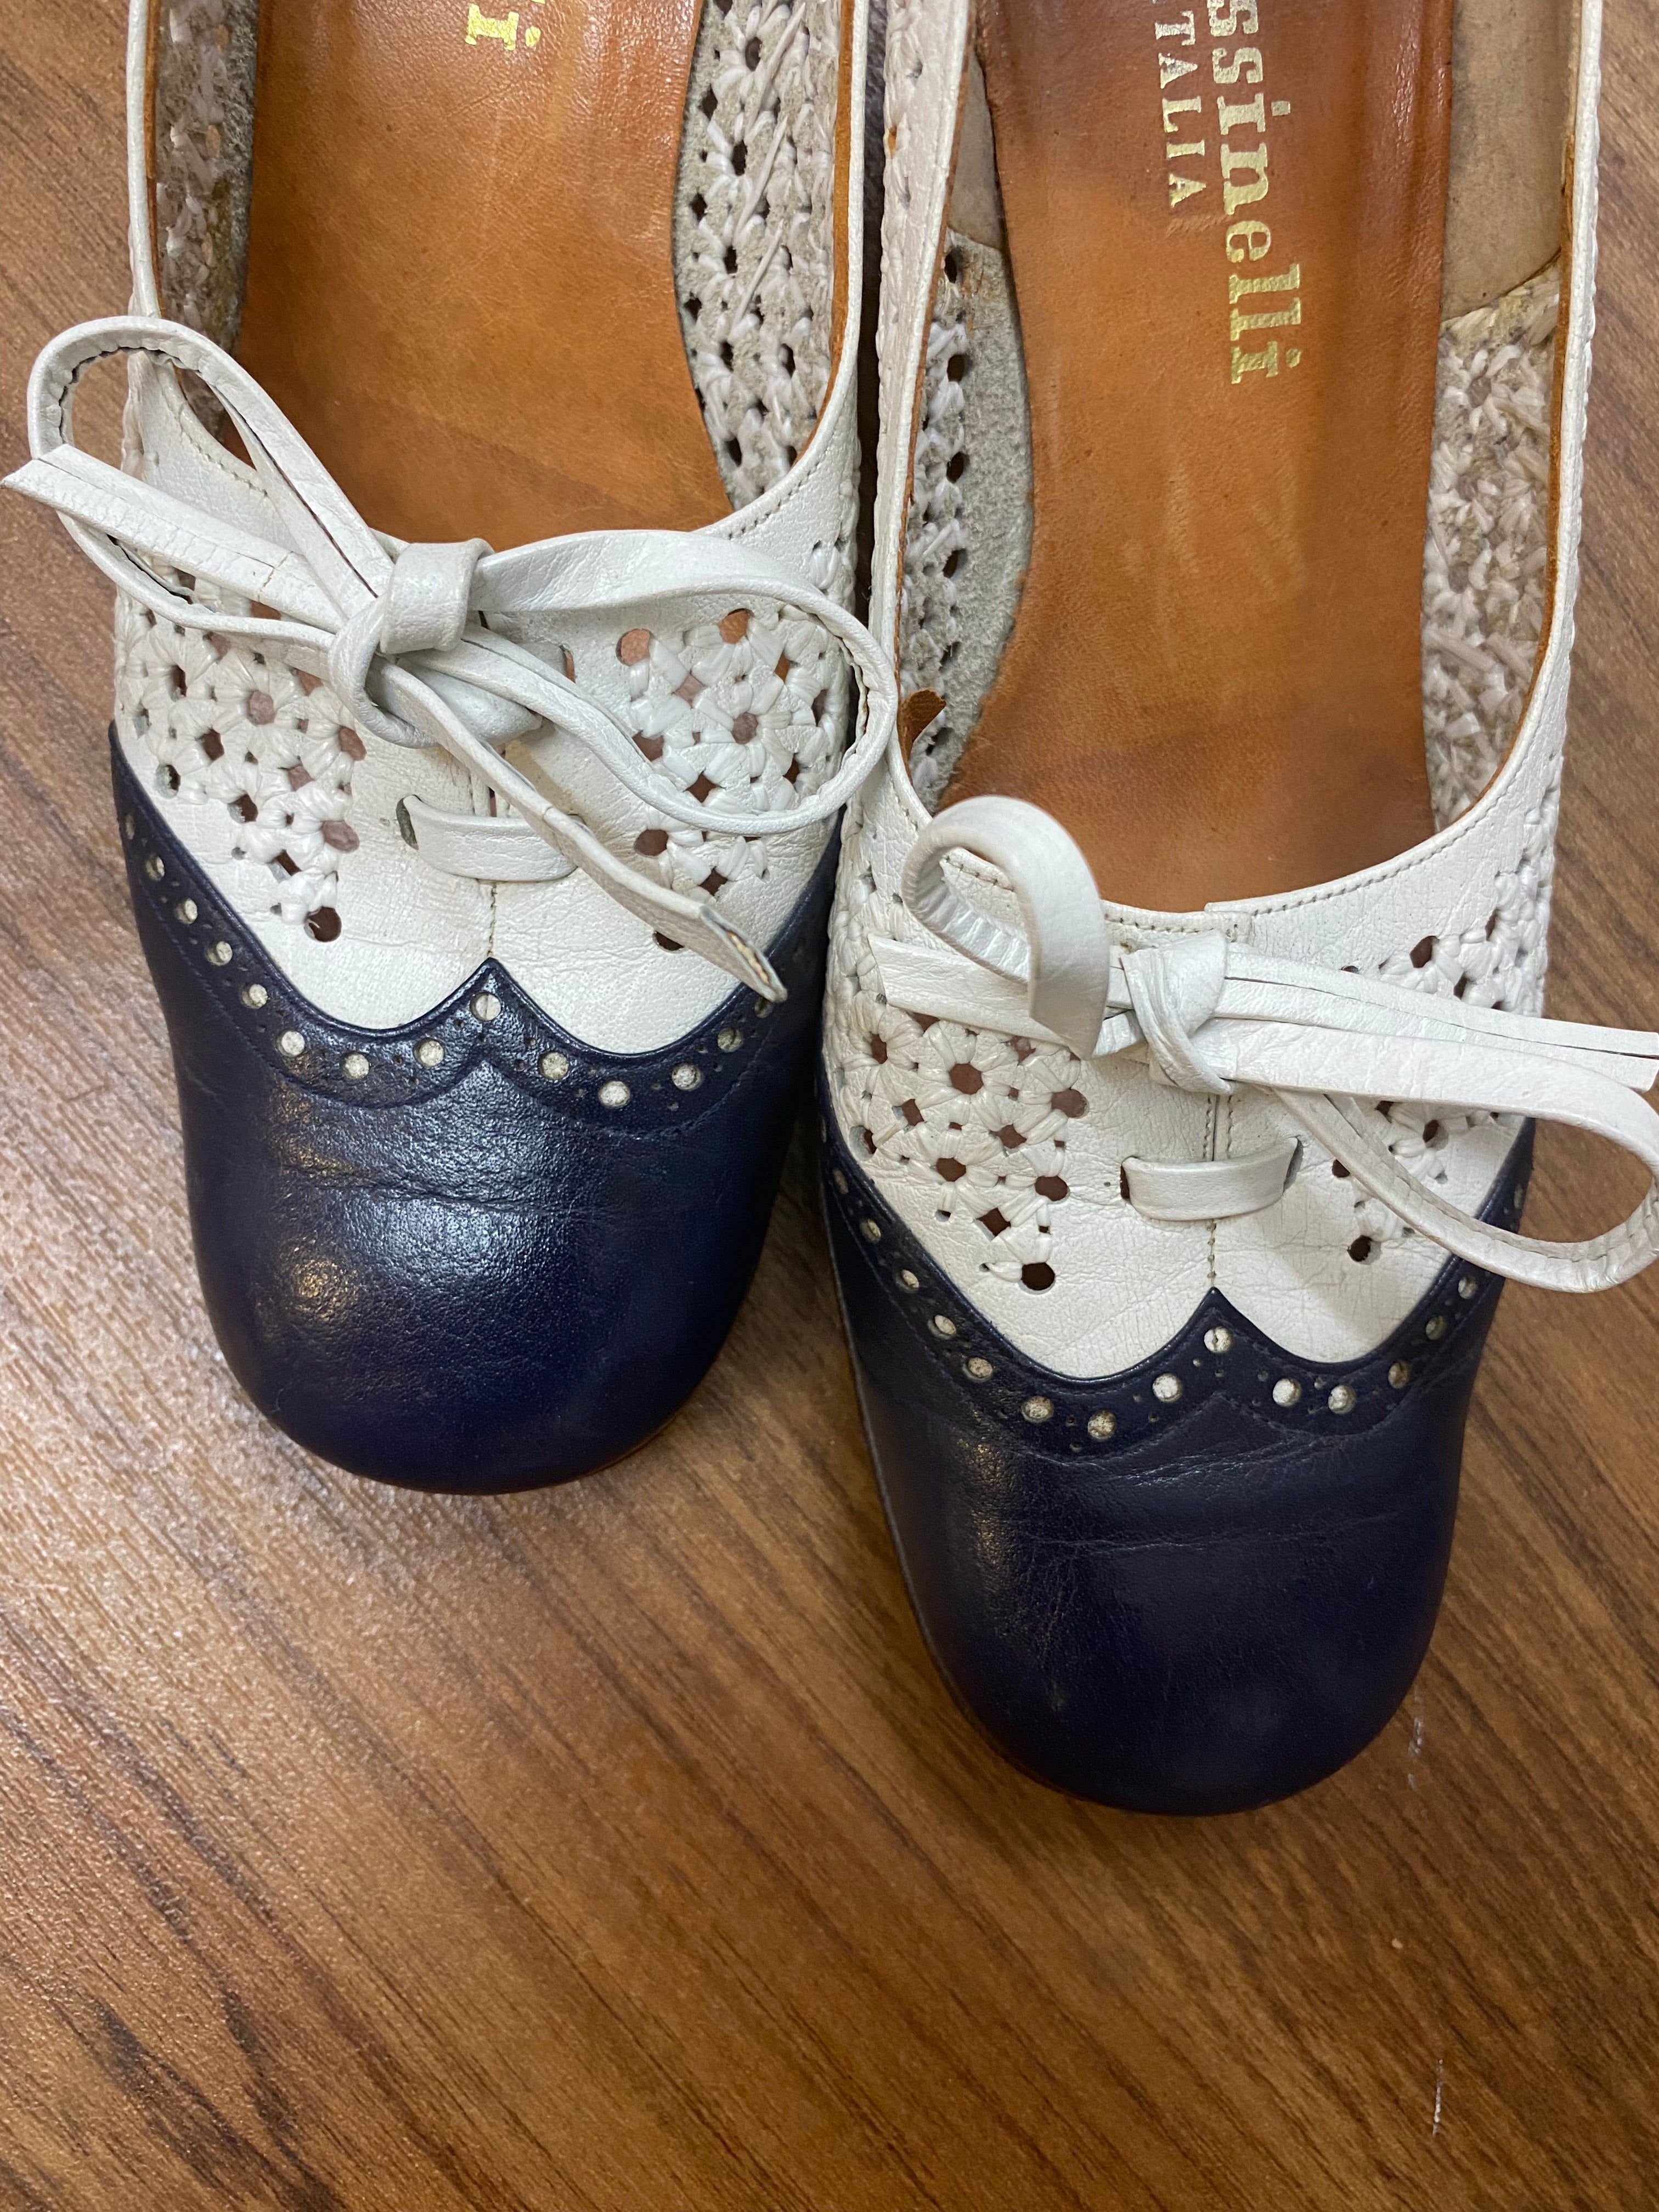 Frassinelli Damen Schuhe mit Lochmuster in Blau Weiß Vintage